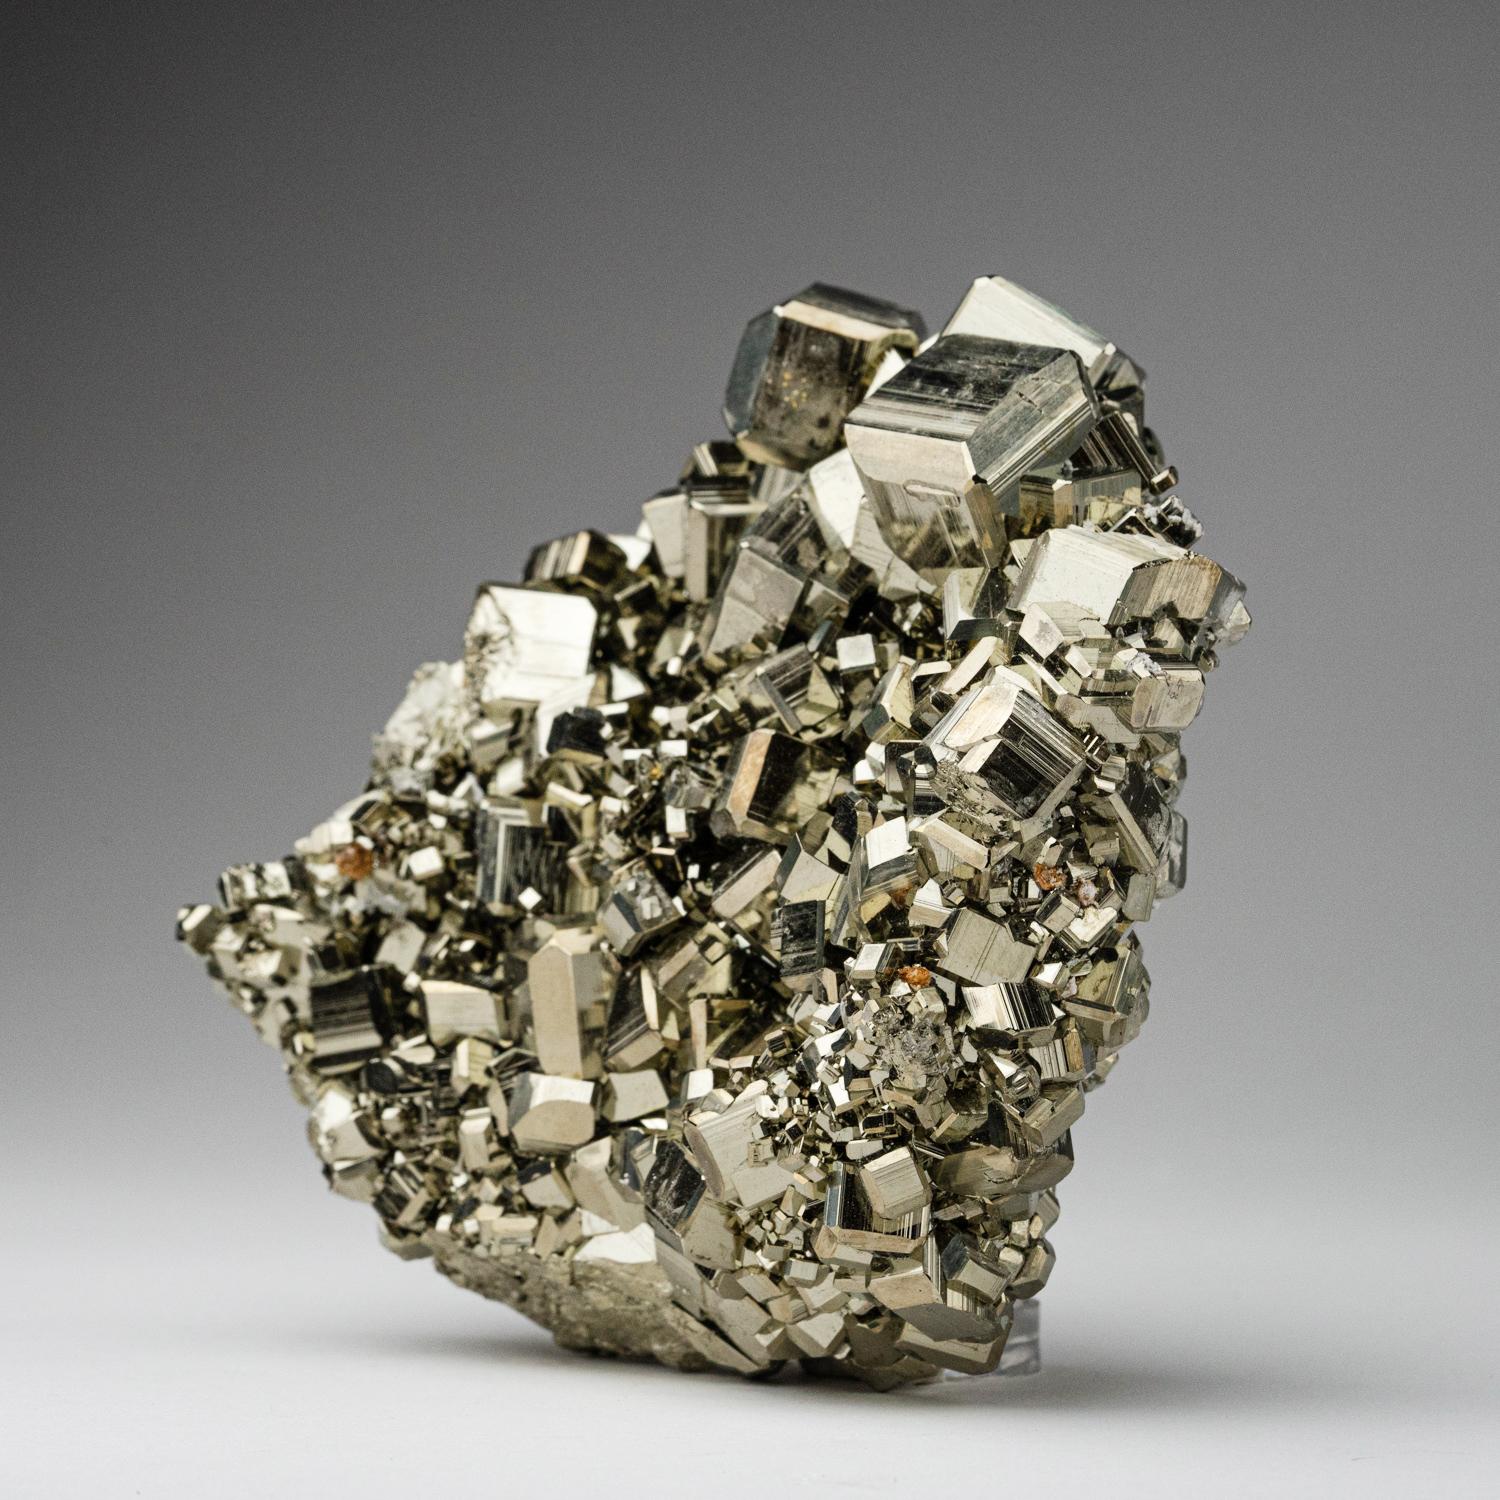 Un groupe de classe mondiale de cristaux de pyrite cubiques parfaitement terminés, imbriqués sur sa matrice naturelle de basalte. Ce spécimen a été découvert dans les célèbres mines de la province de Huanuco, au Pérou, considérées comme l'un des